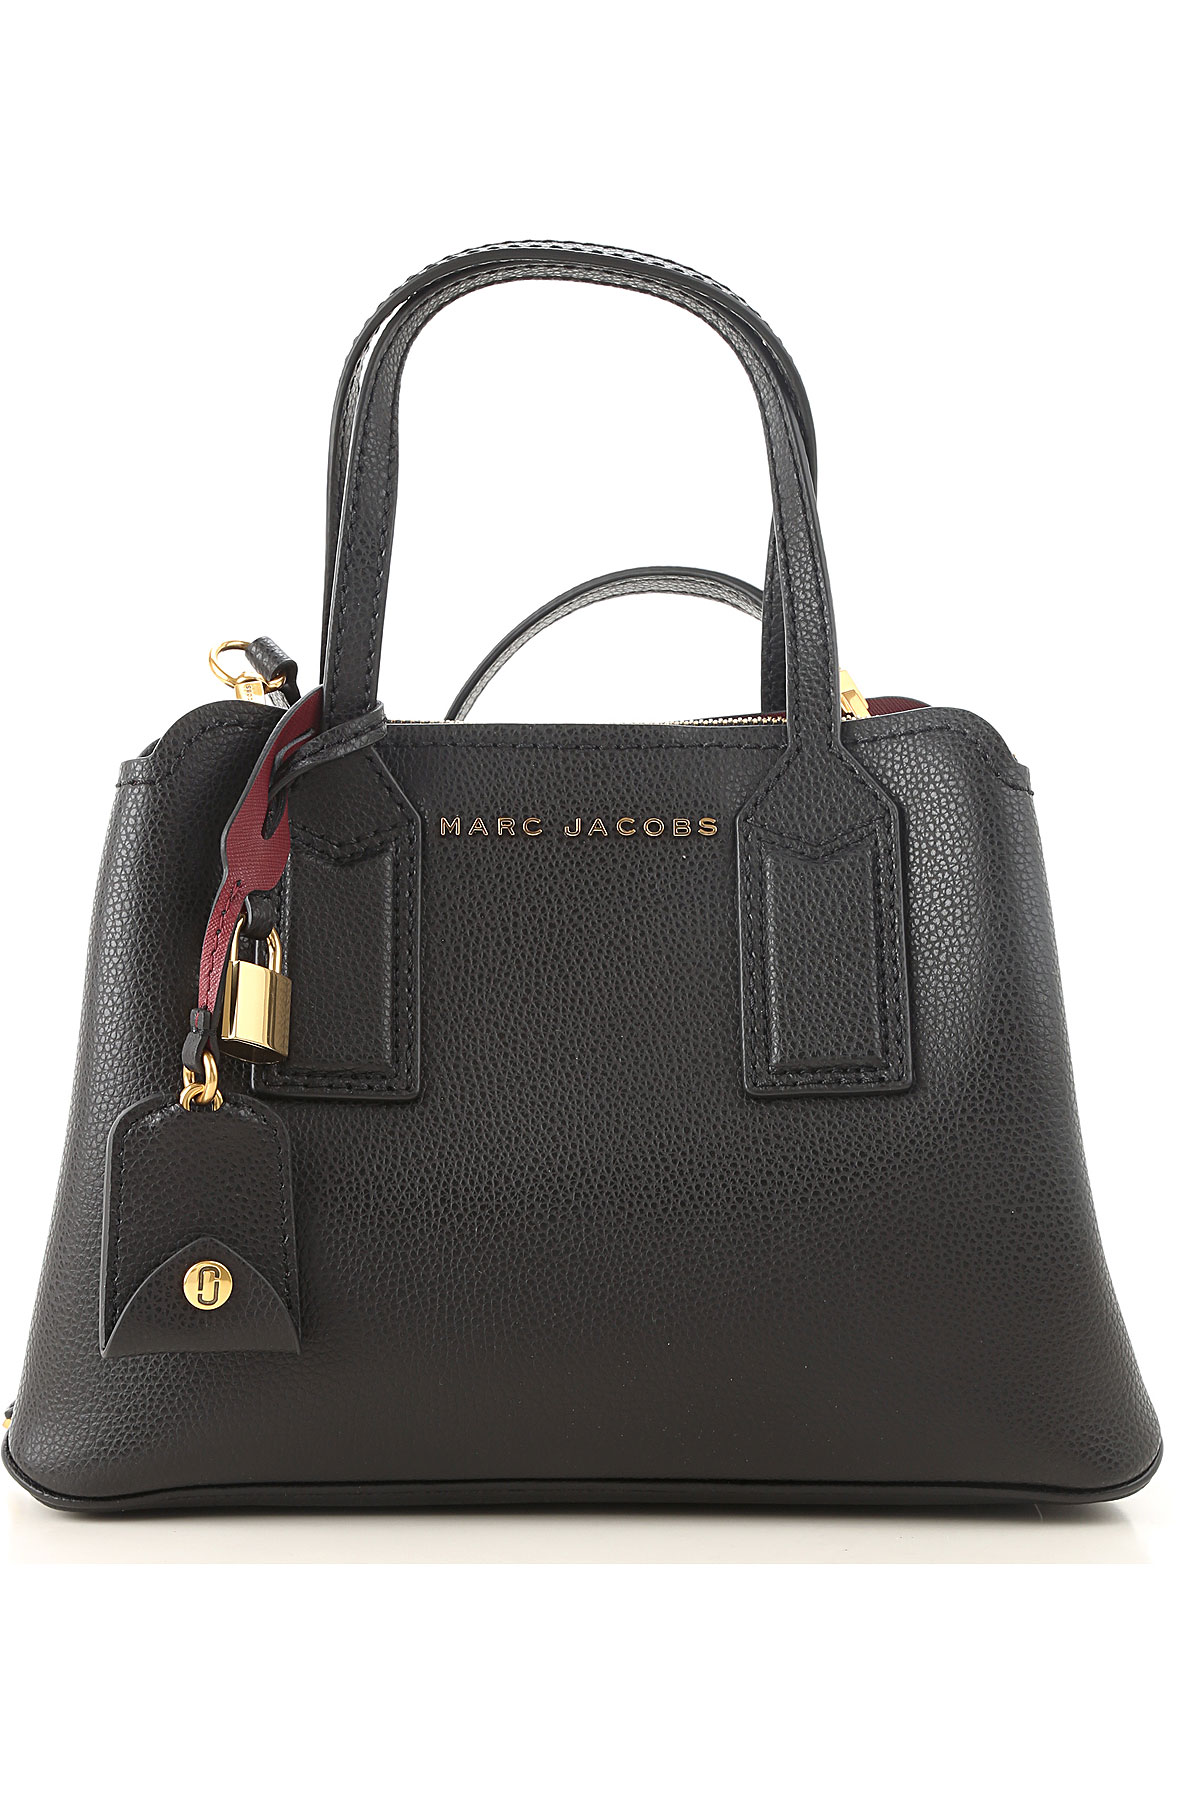 Marc Jacobs Handbag - Canada